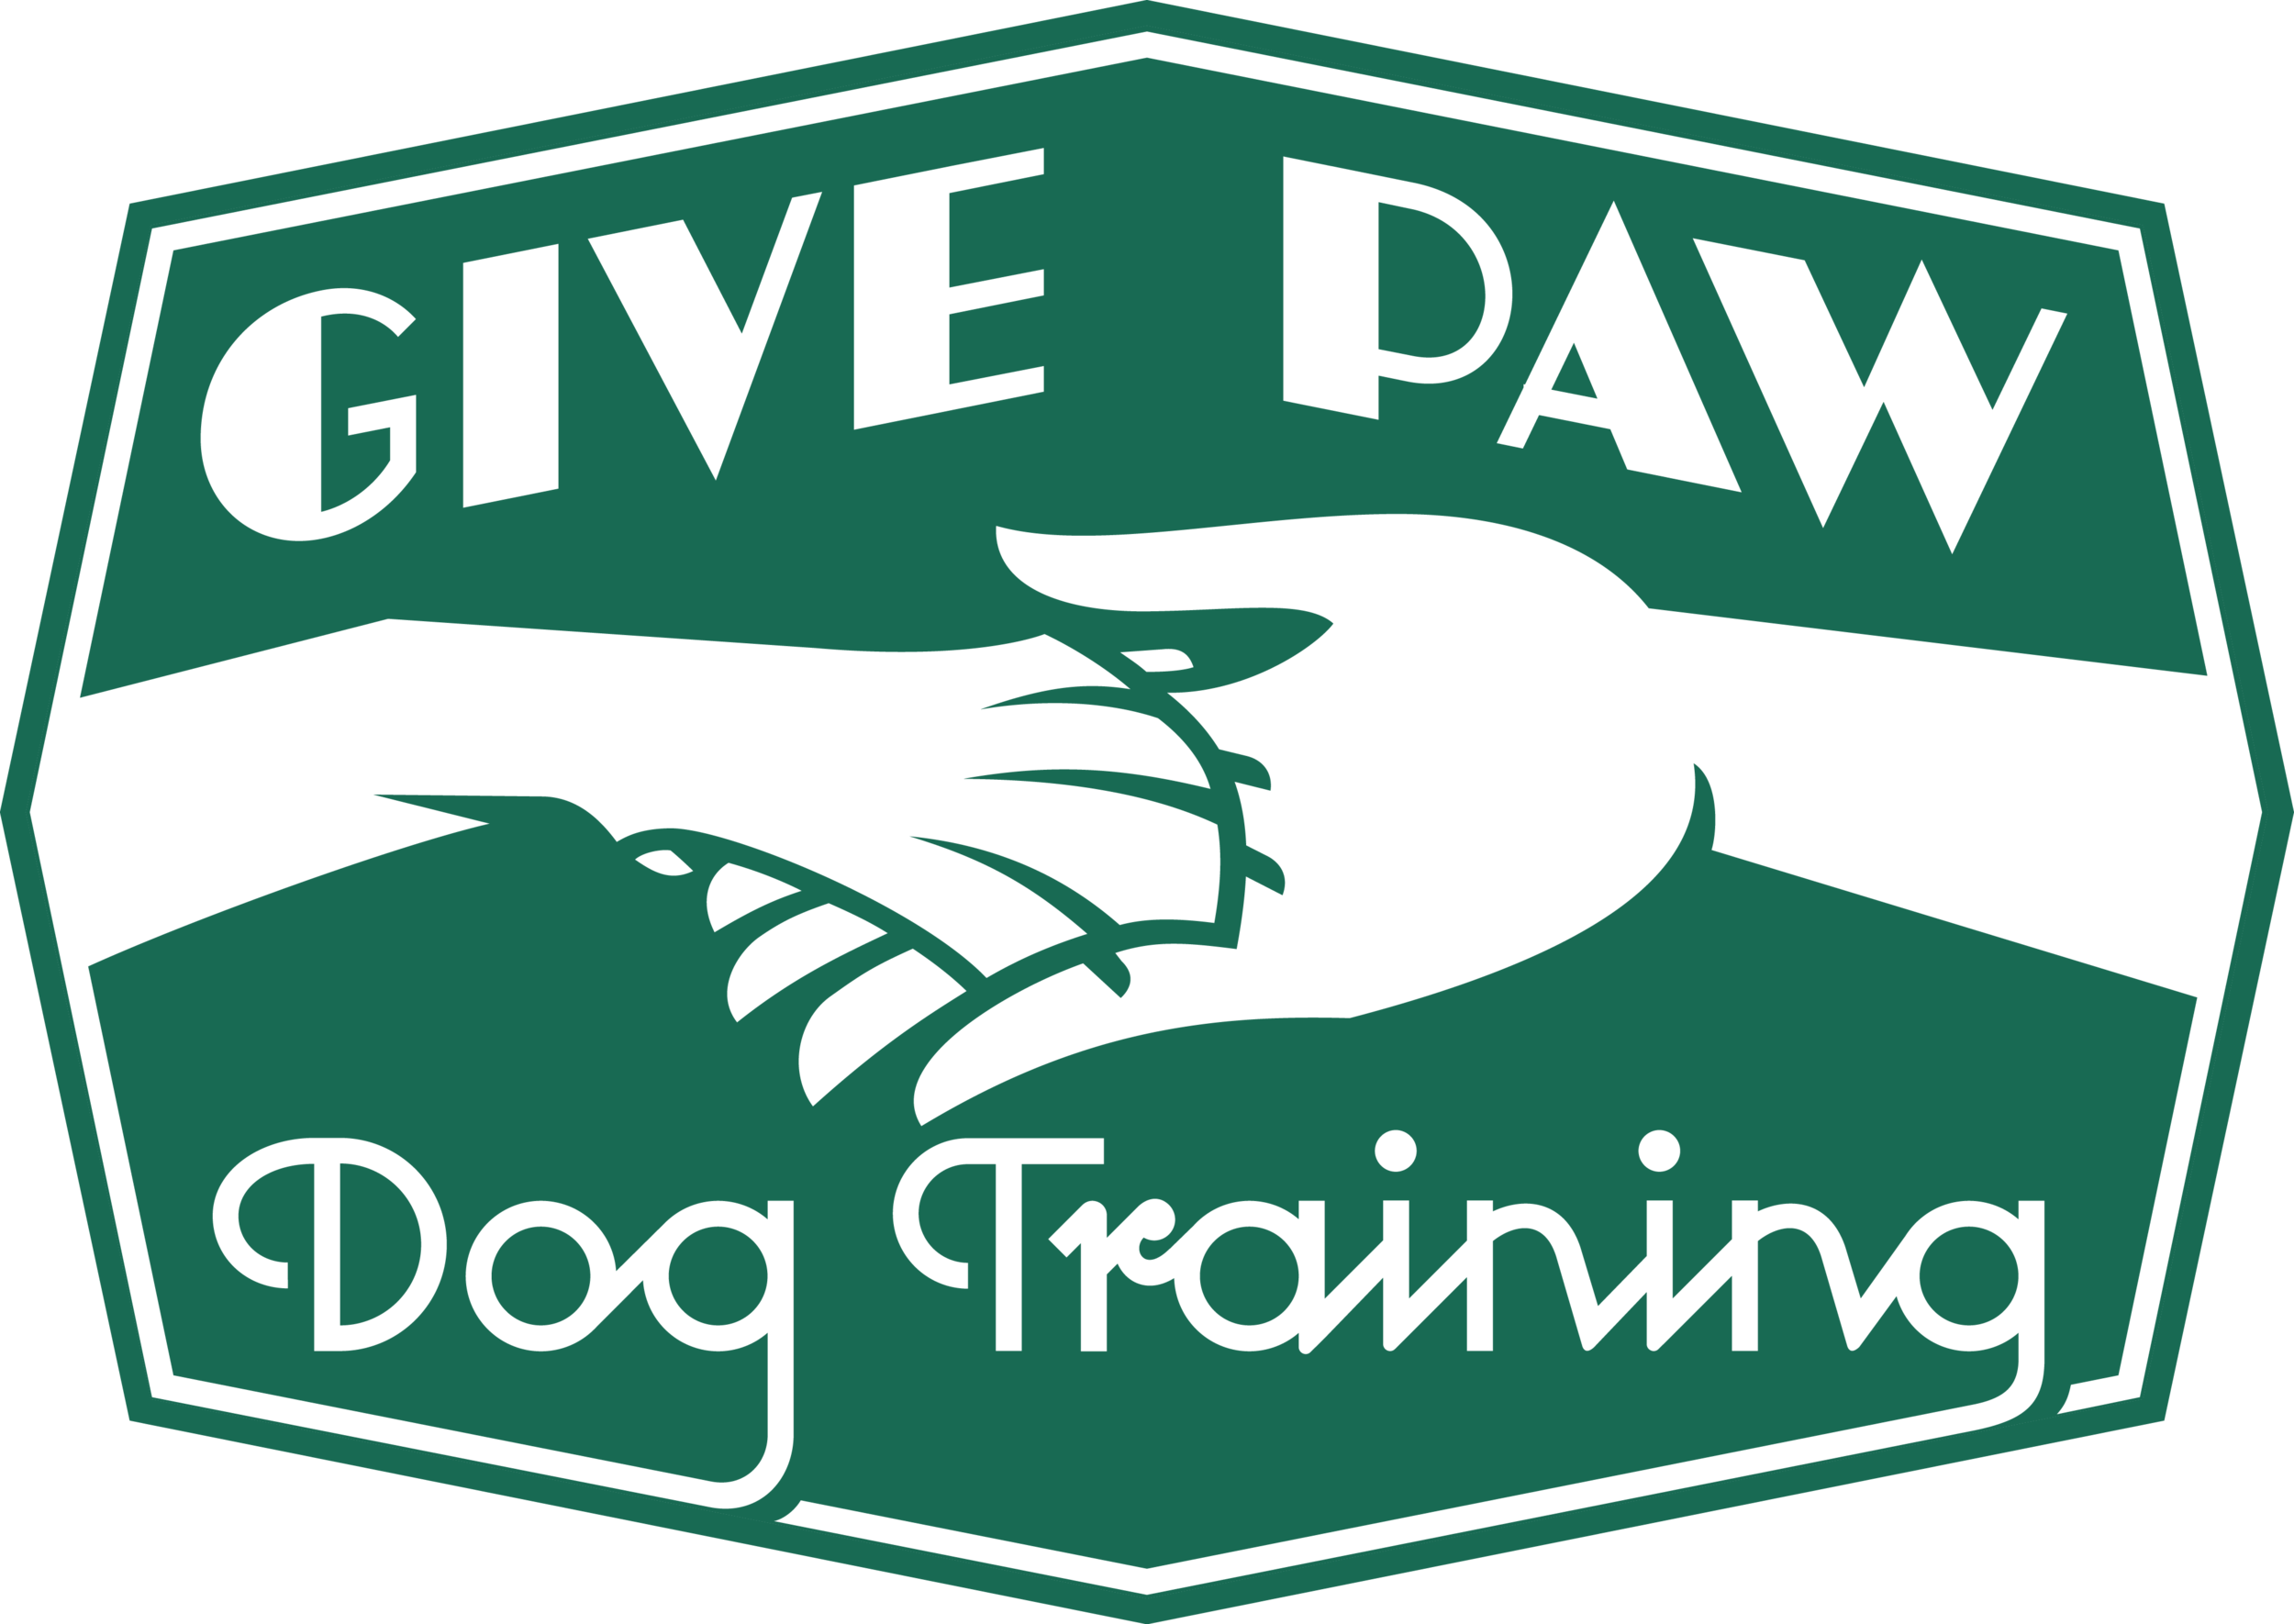 Give Paw Dog Training